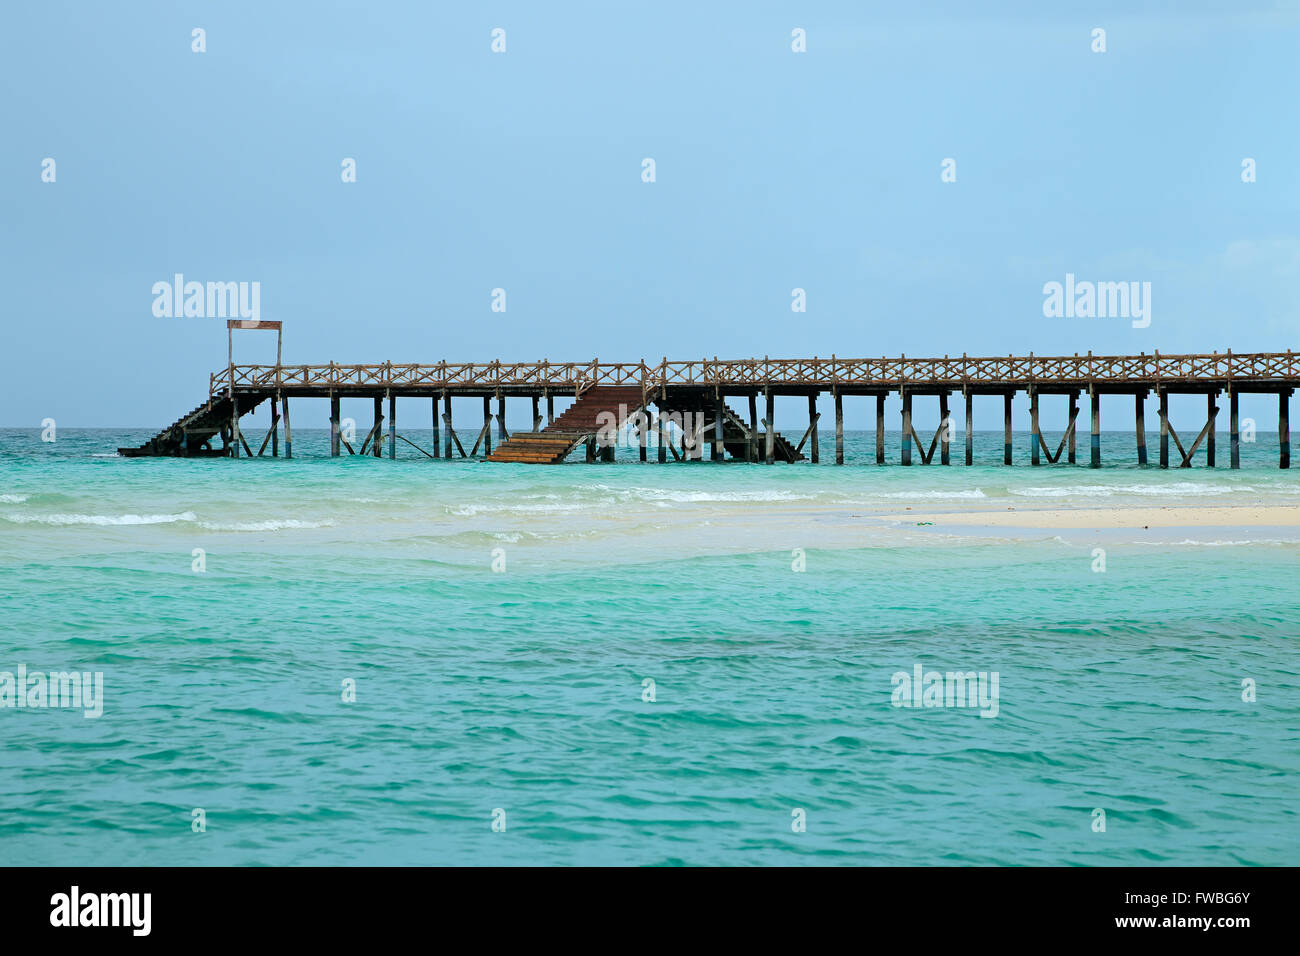 Il molo di legno su una spiaggia tropicale con turchesi acque cristalline, isola di Zanzibar Foto Stock